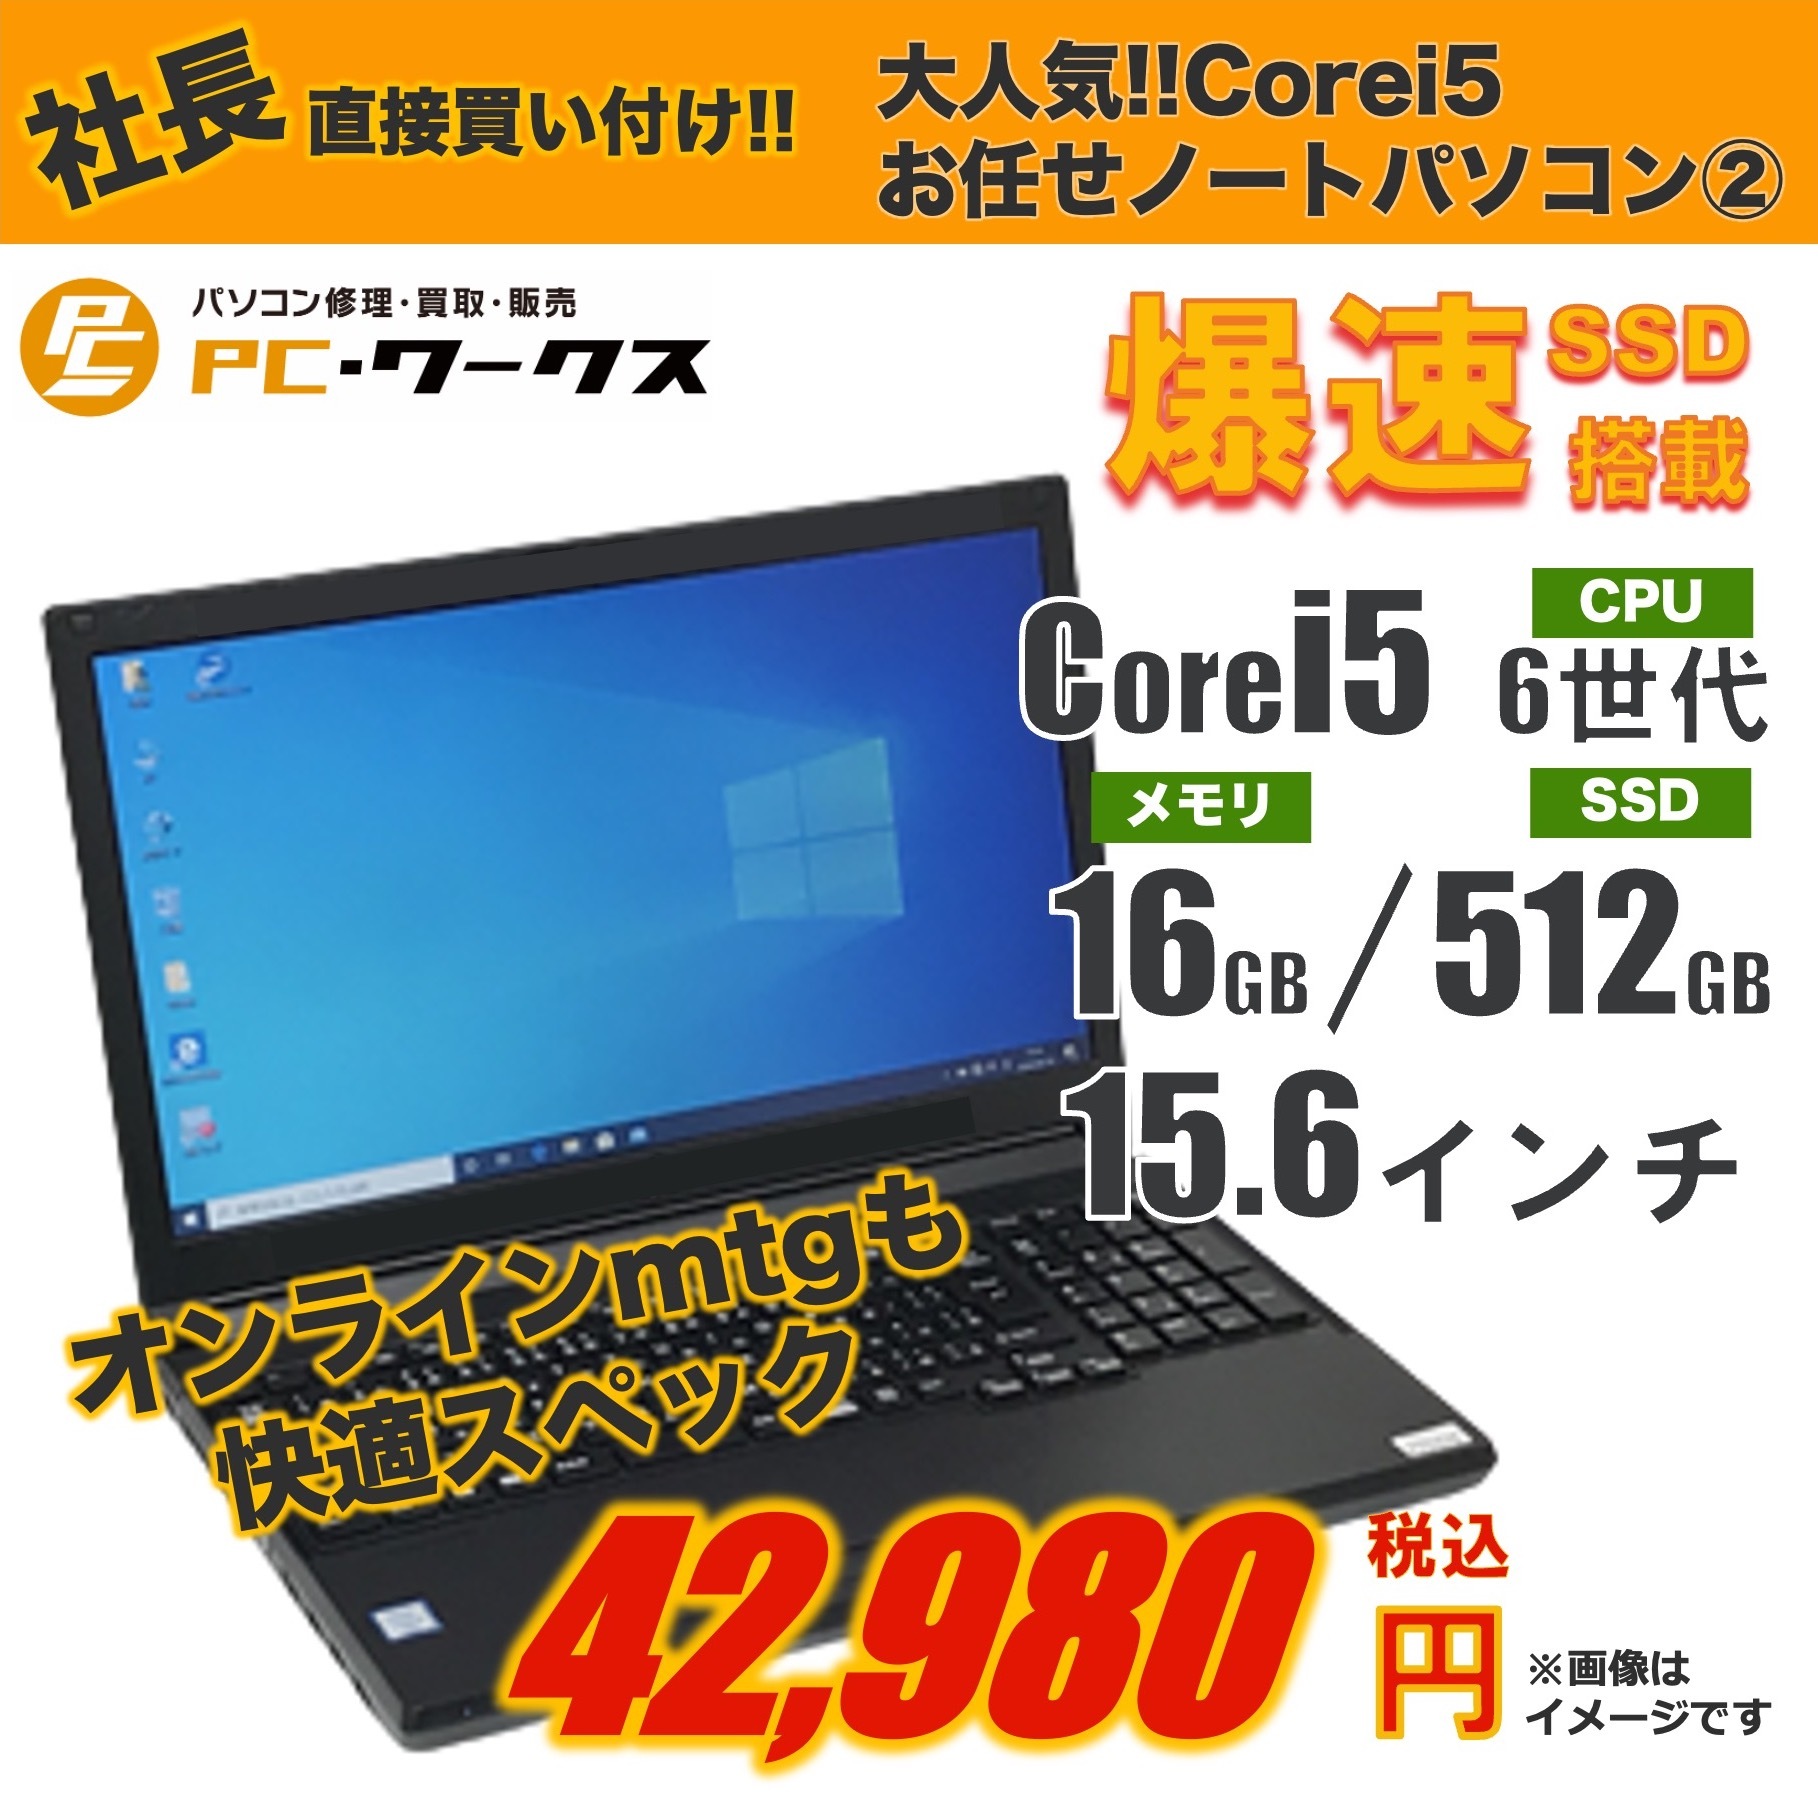 大人気 Corei5 お任せノートパソコン②15.6inch